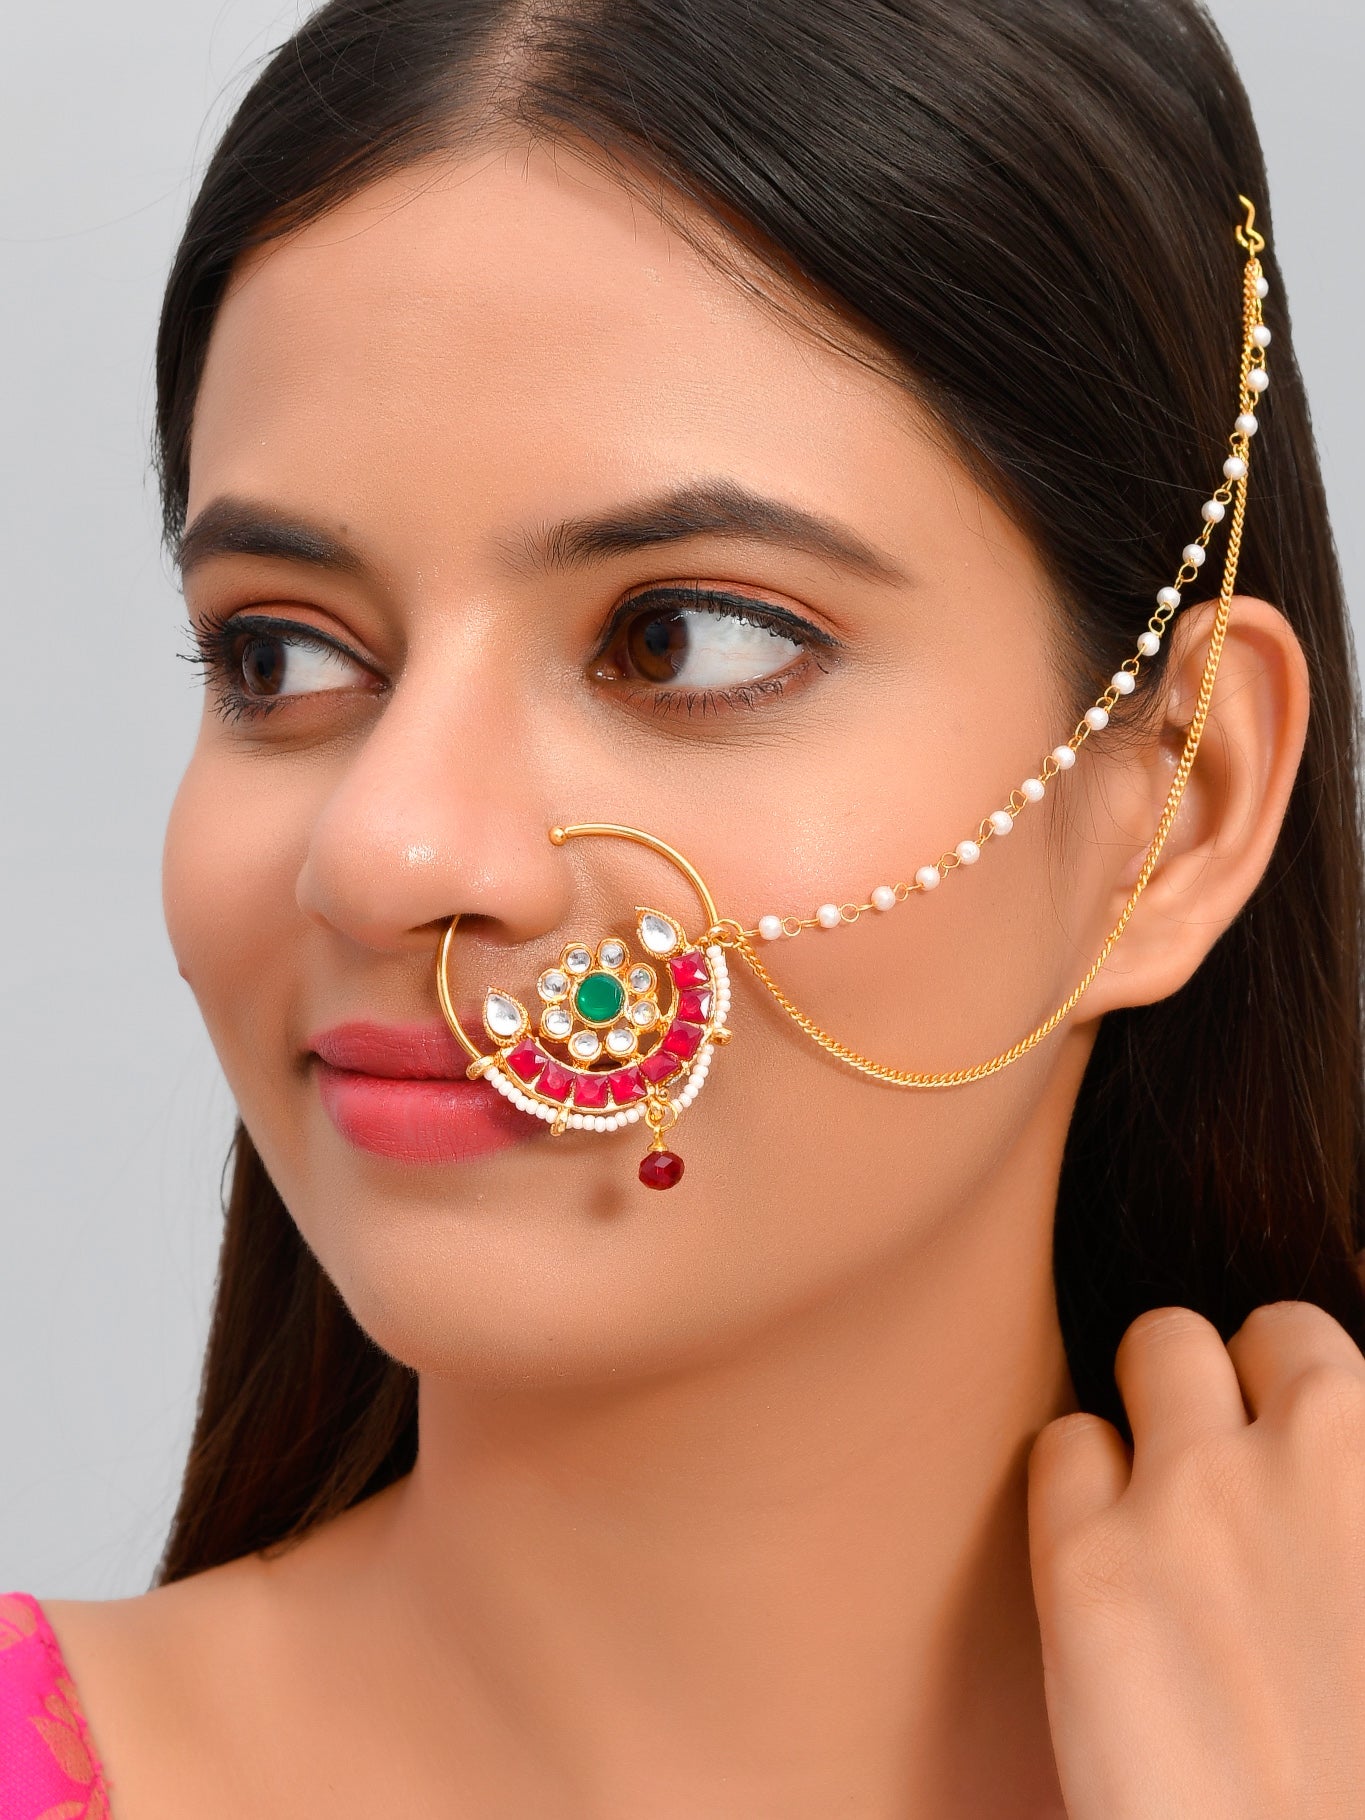 18K Yellow Gold/White Gold Plated Tassel Chain Nose Septum Ring Earring  Gift | eBay